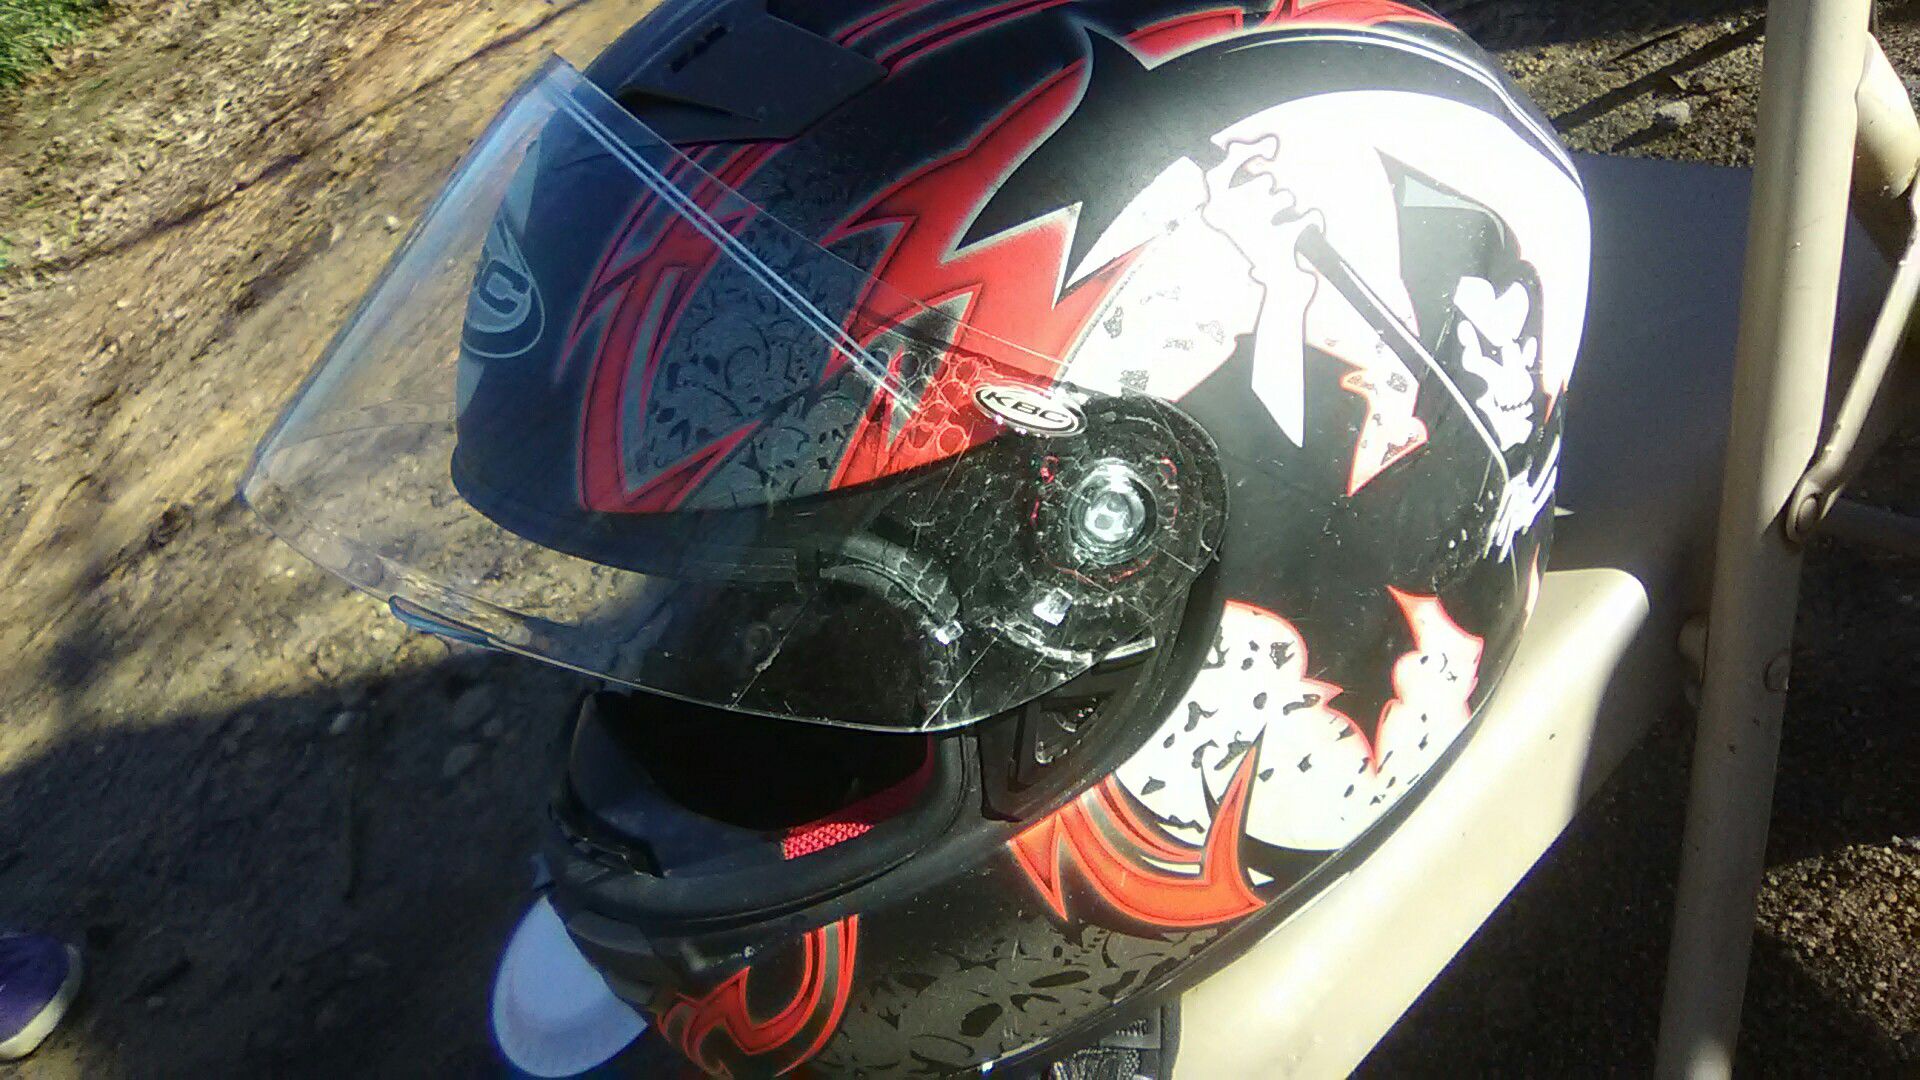 Kbc helmet